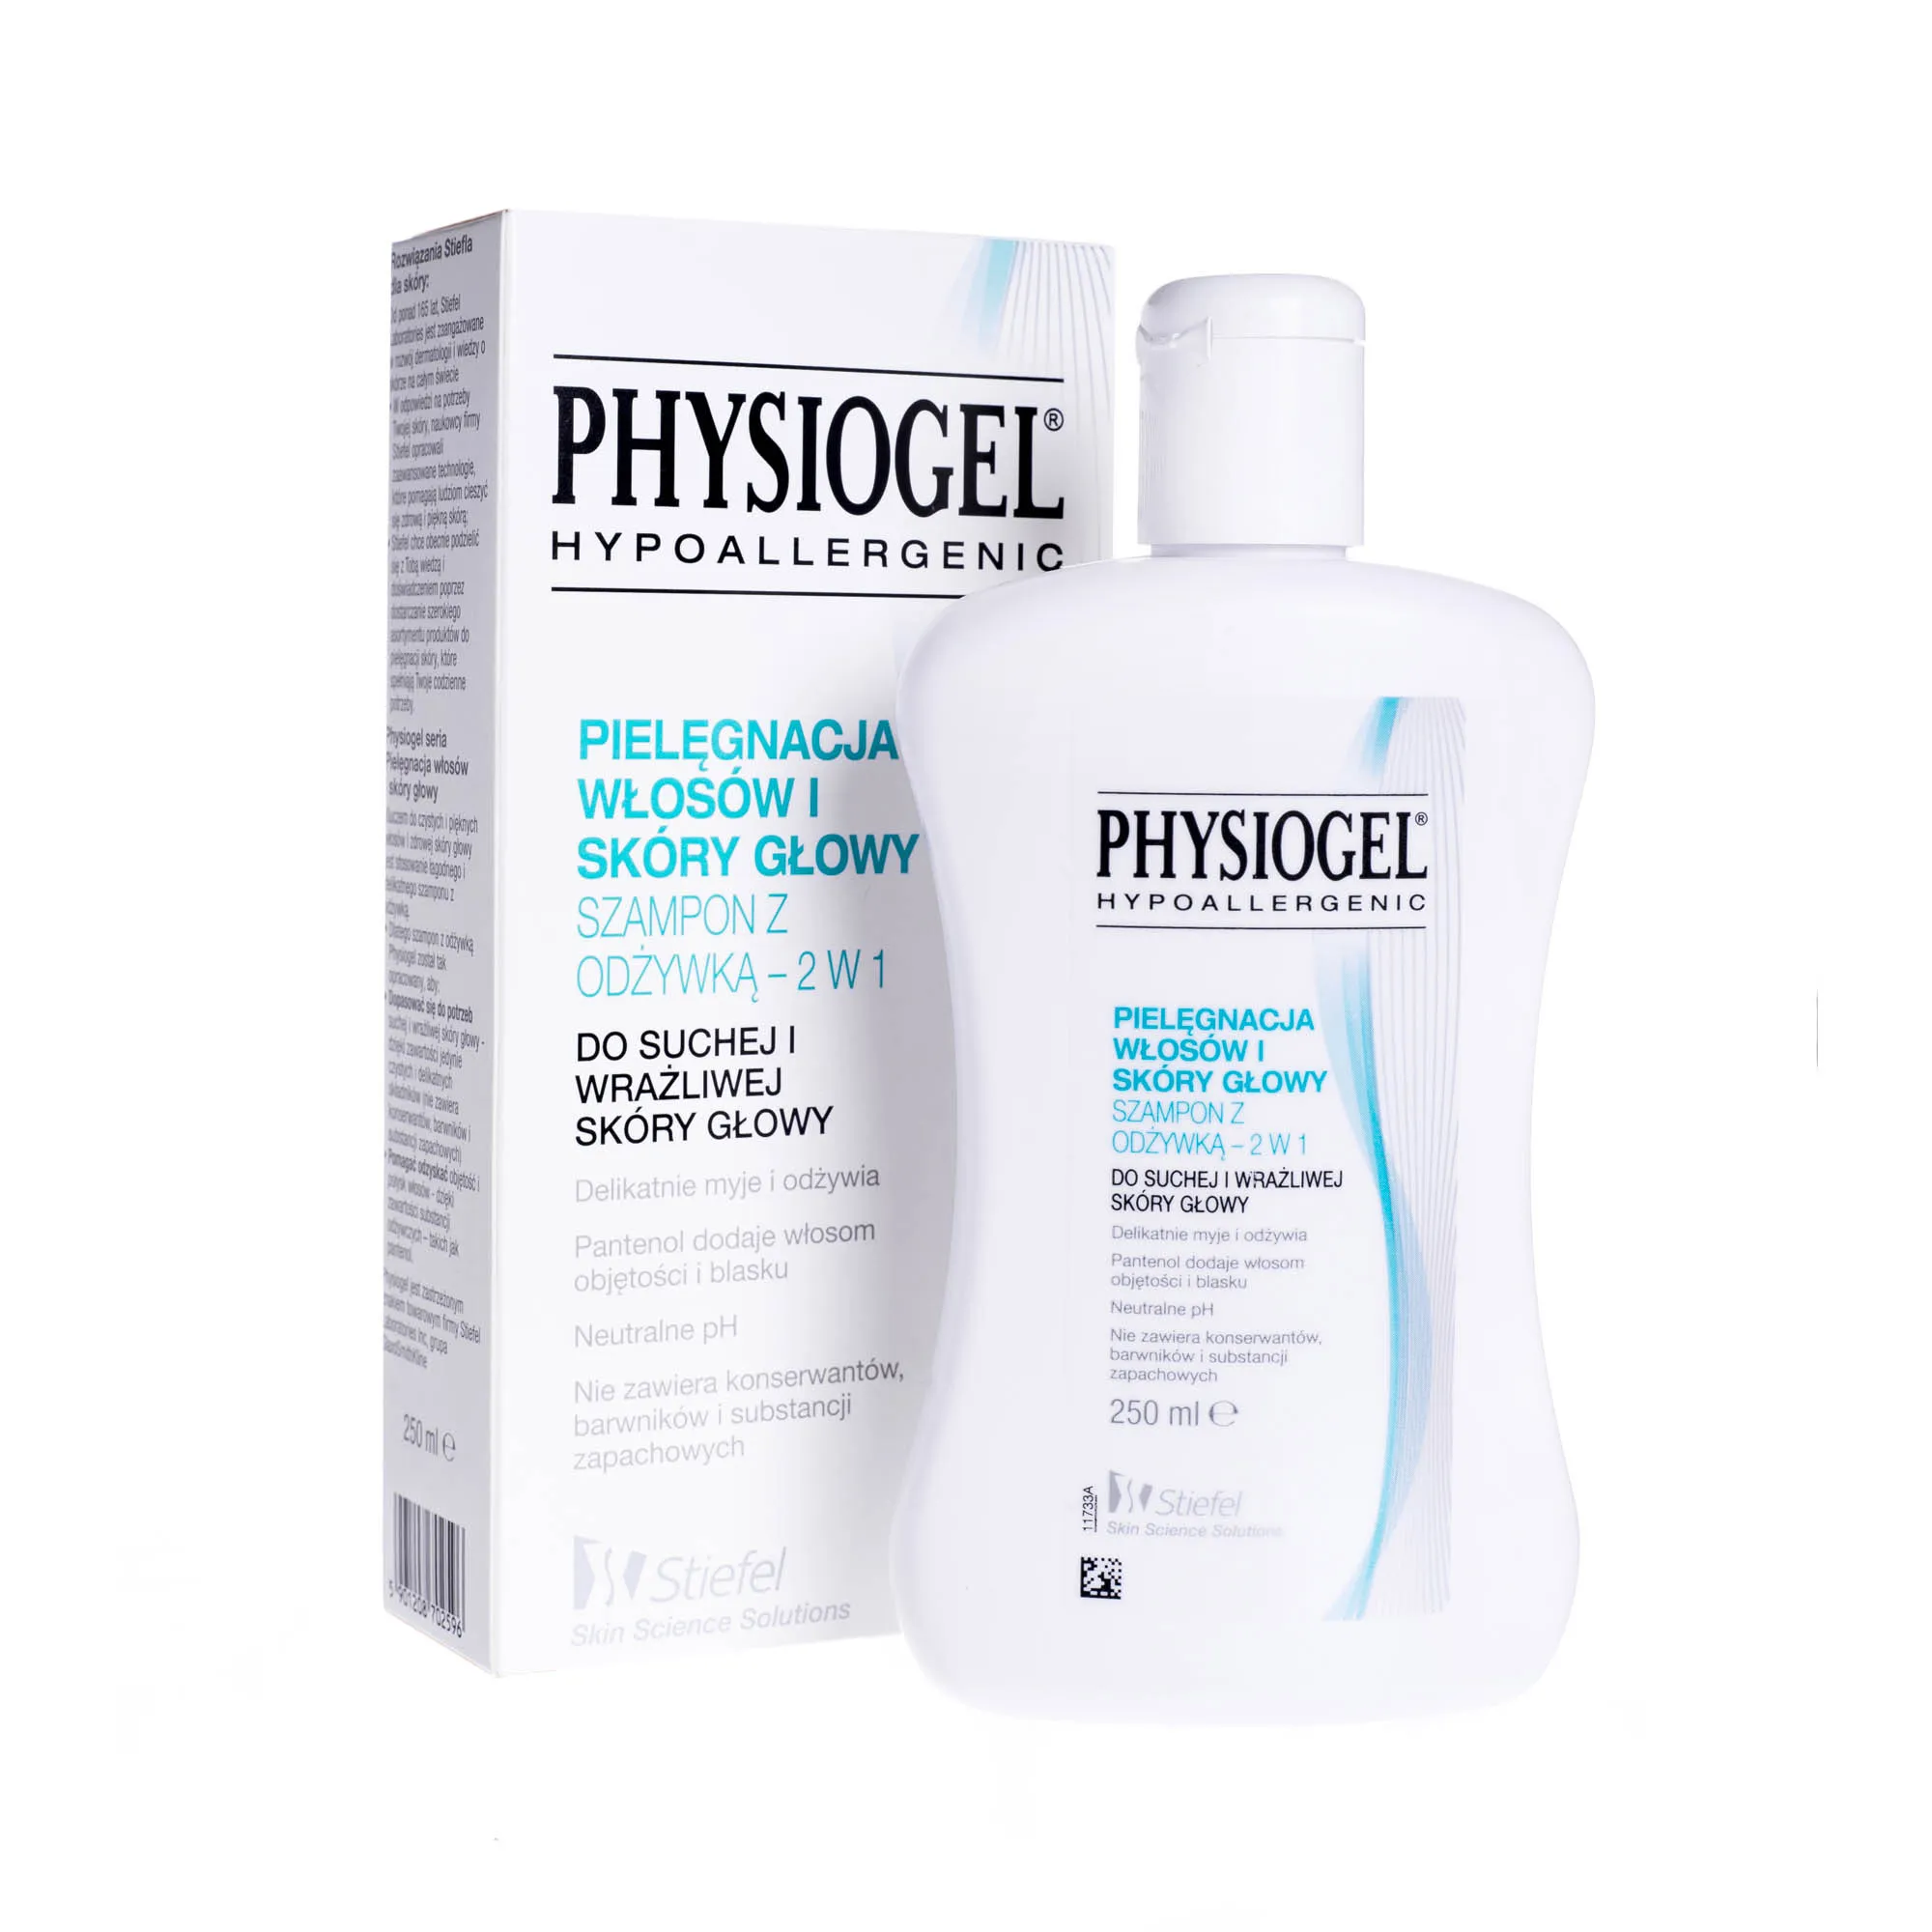 Physiogel Hypoallergenic szampon z odżywką 2w1 do suchej i wrażliwej skóry głowy, 250 ml